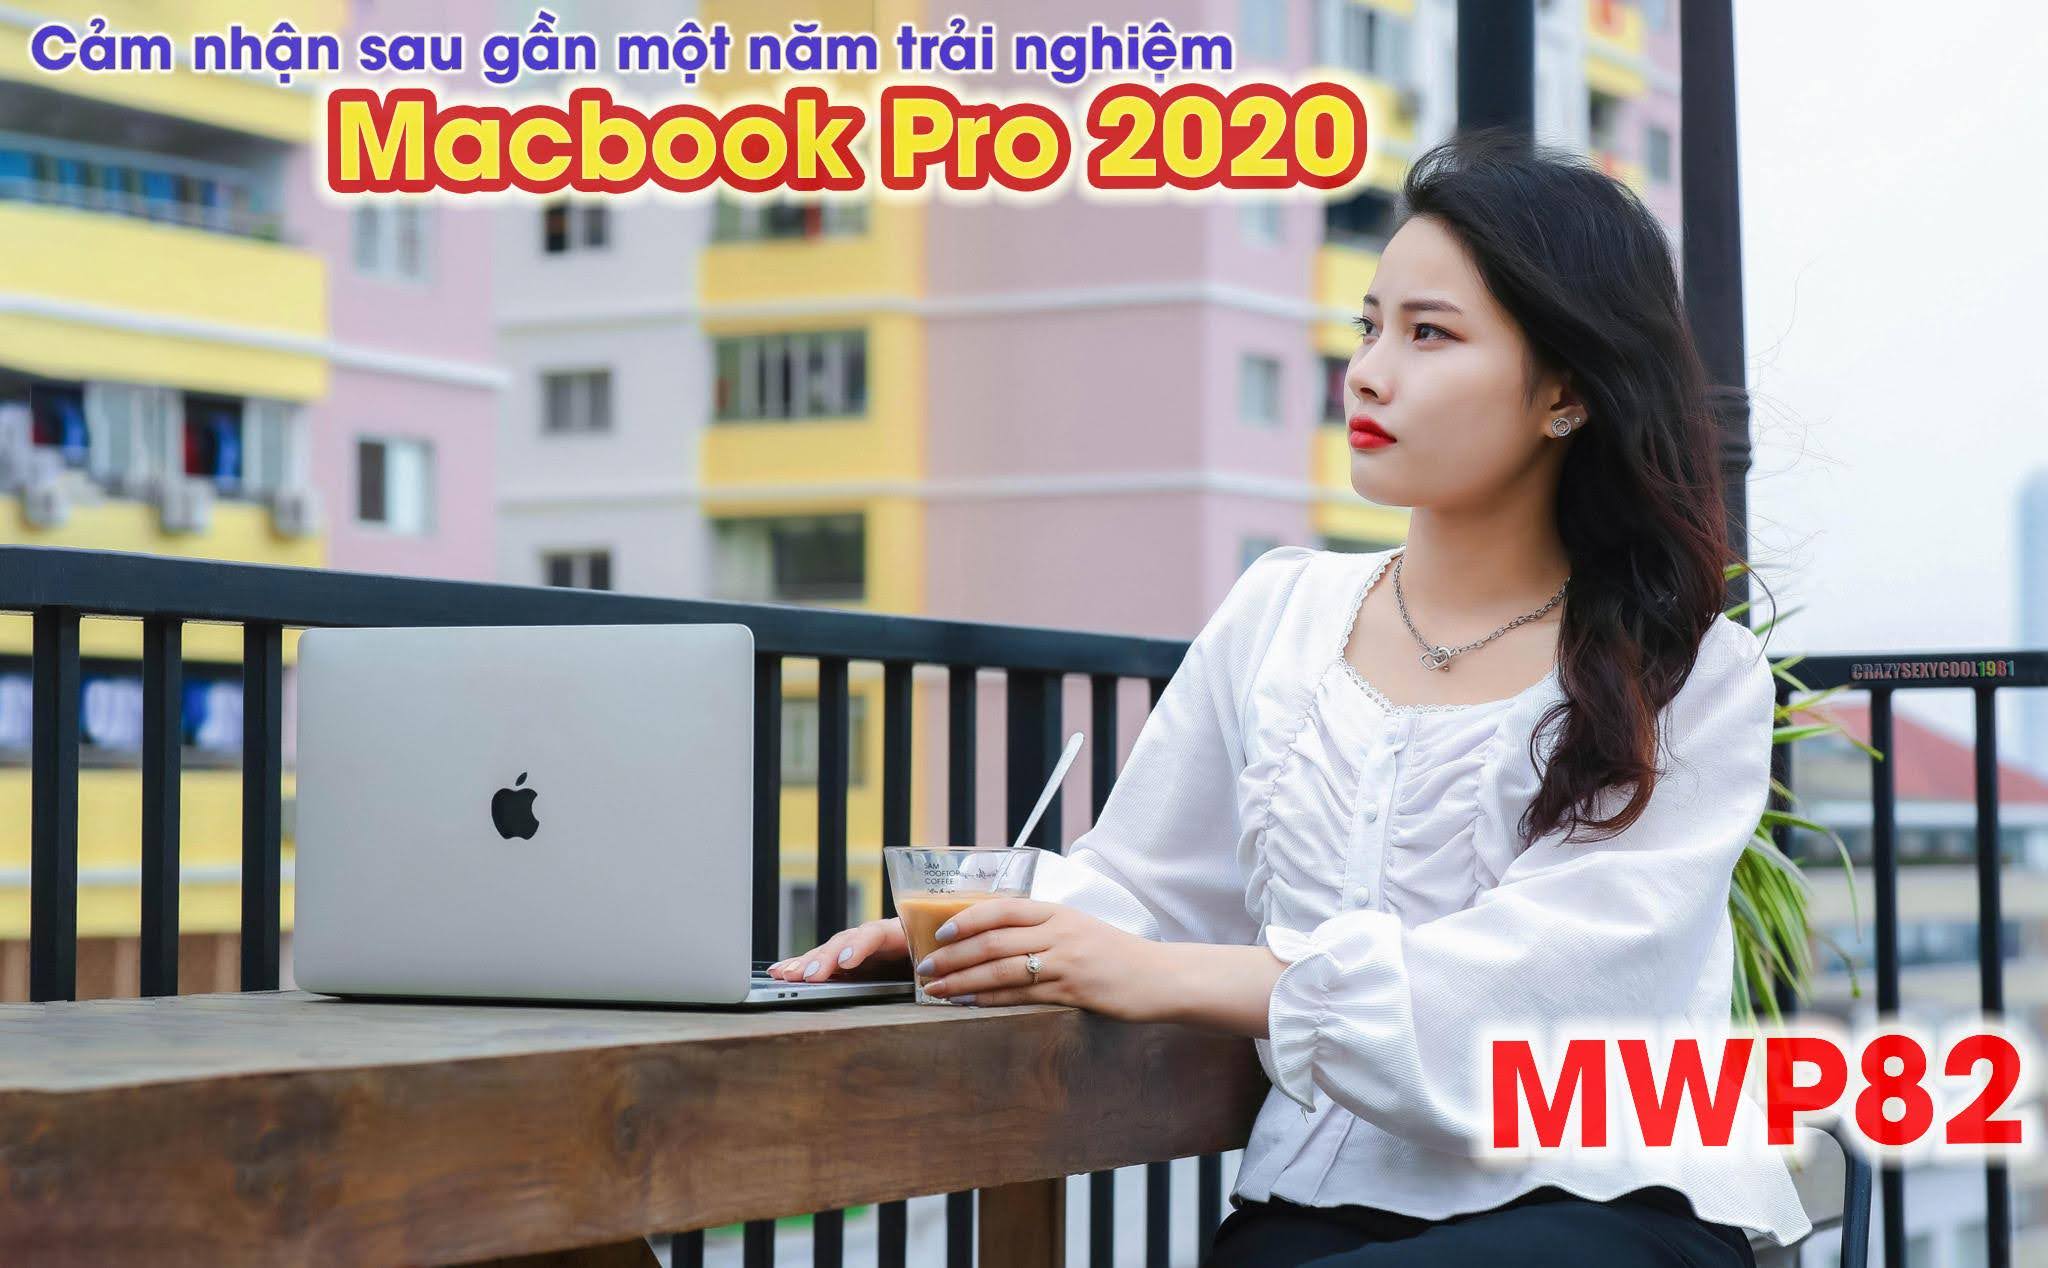 Cảm nhận sau gần một năm xài Macbook Pro 2020: cũng được